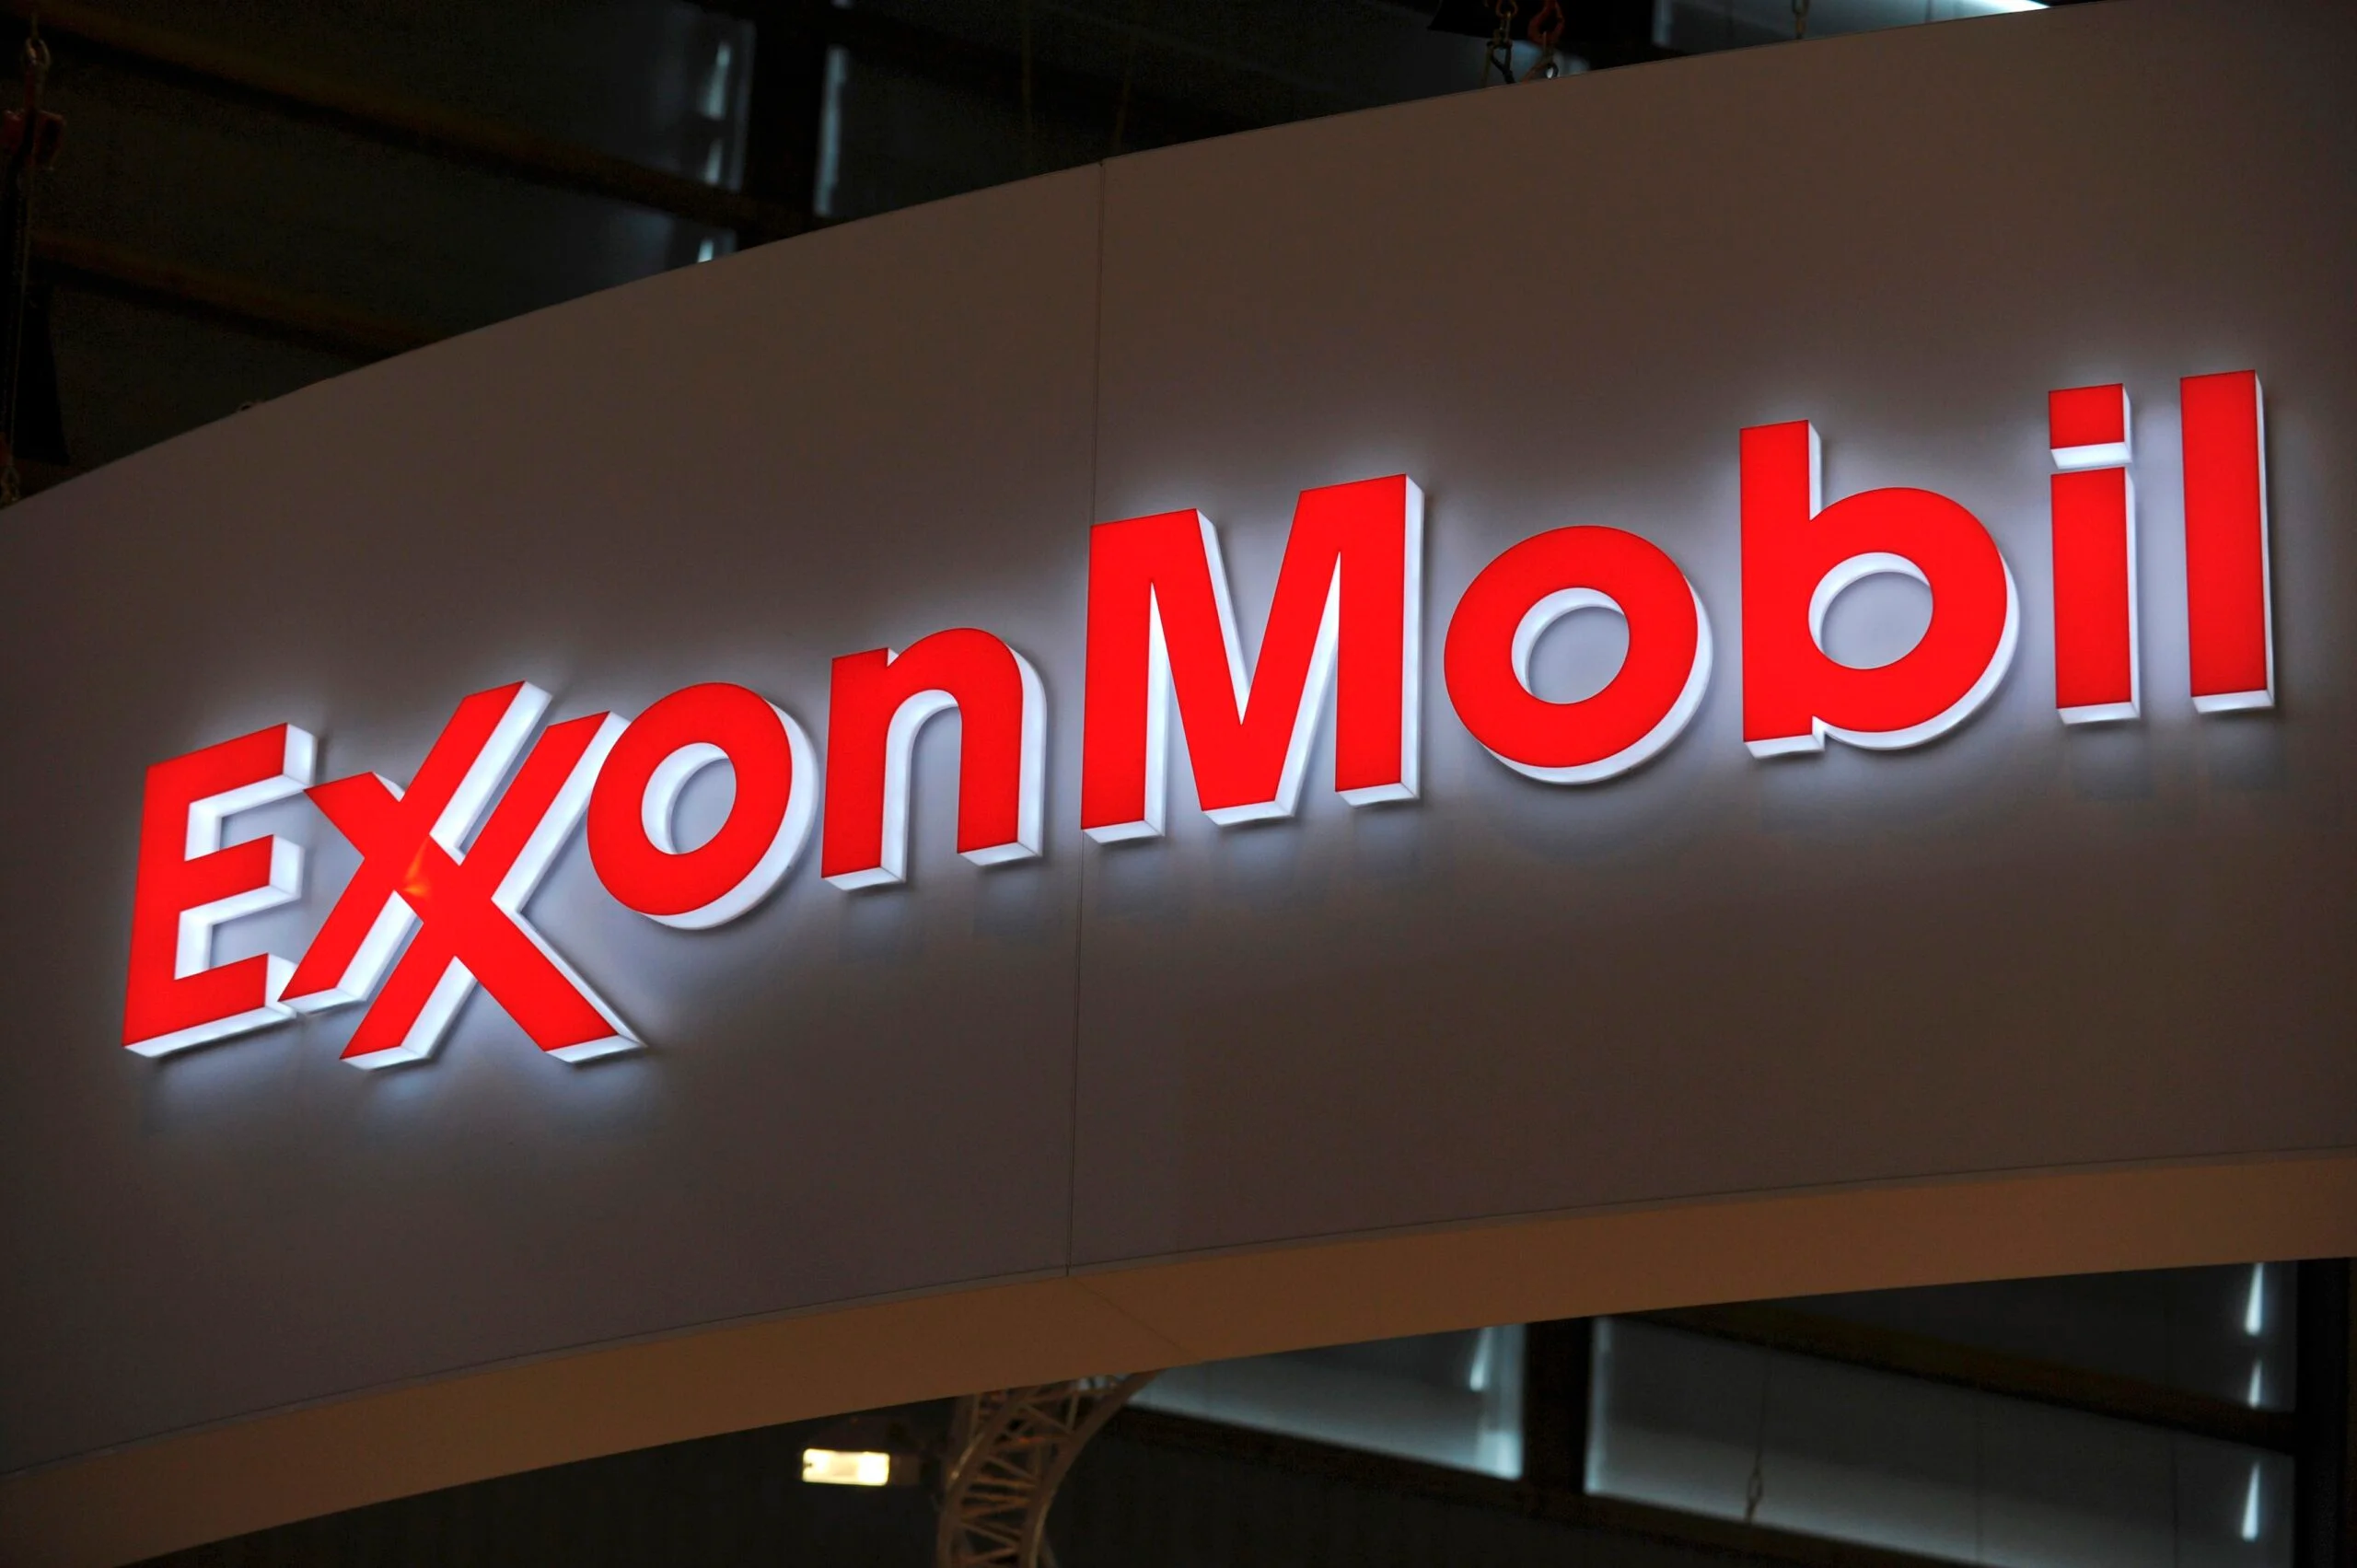 Oil giant Exxon files lawsuit against climate activist investors' proposal